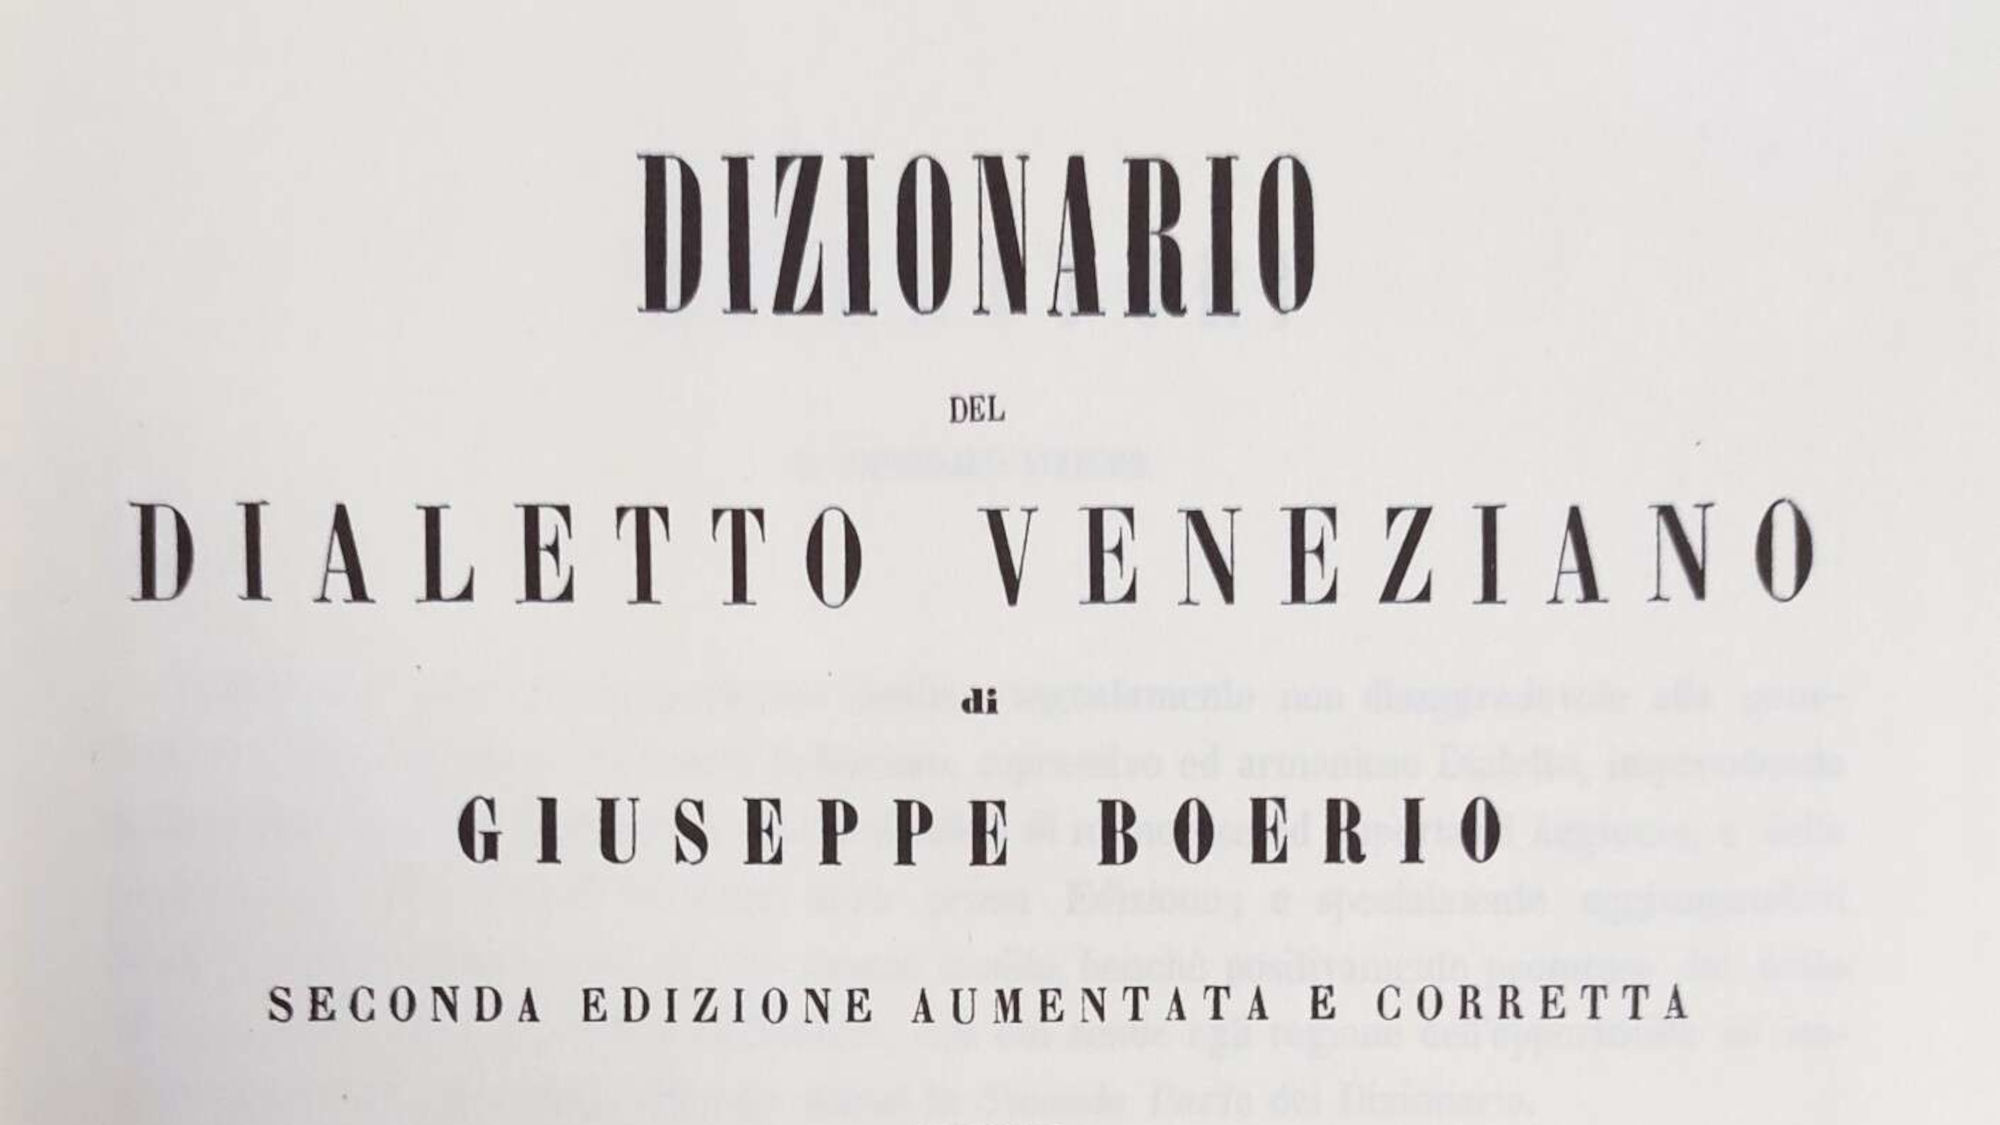 The Dizionario del Dialetto Veneziano by Giuseppe Boerio